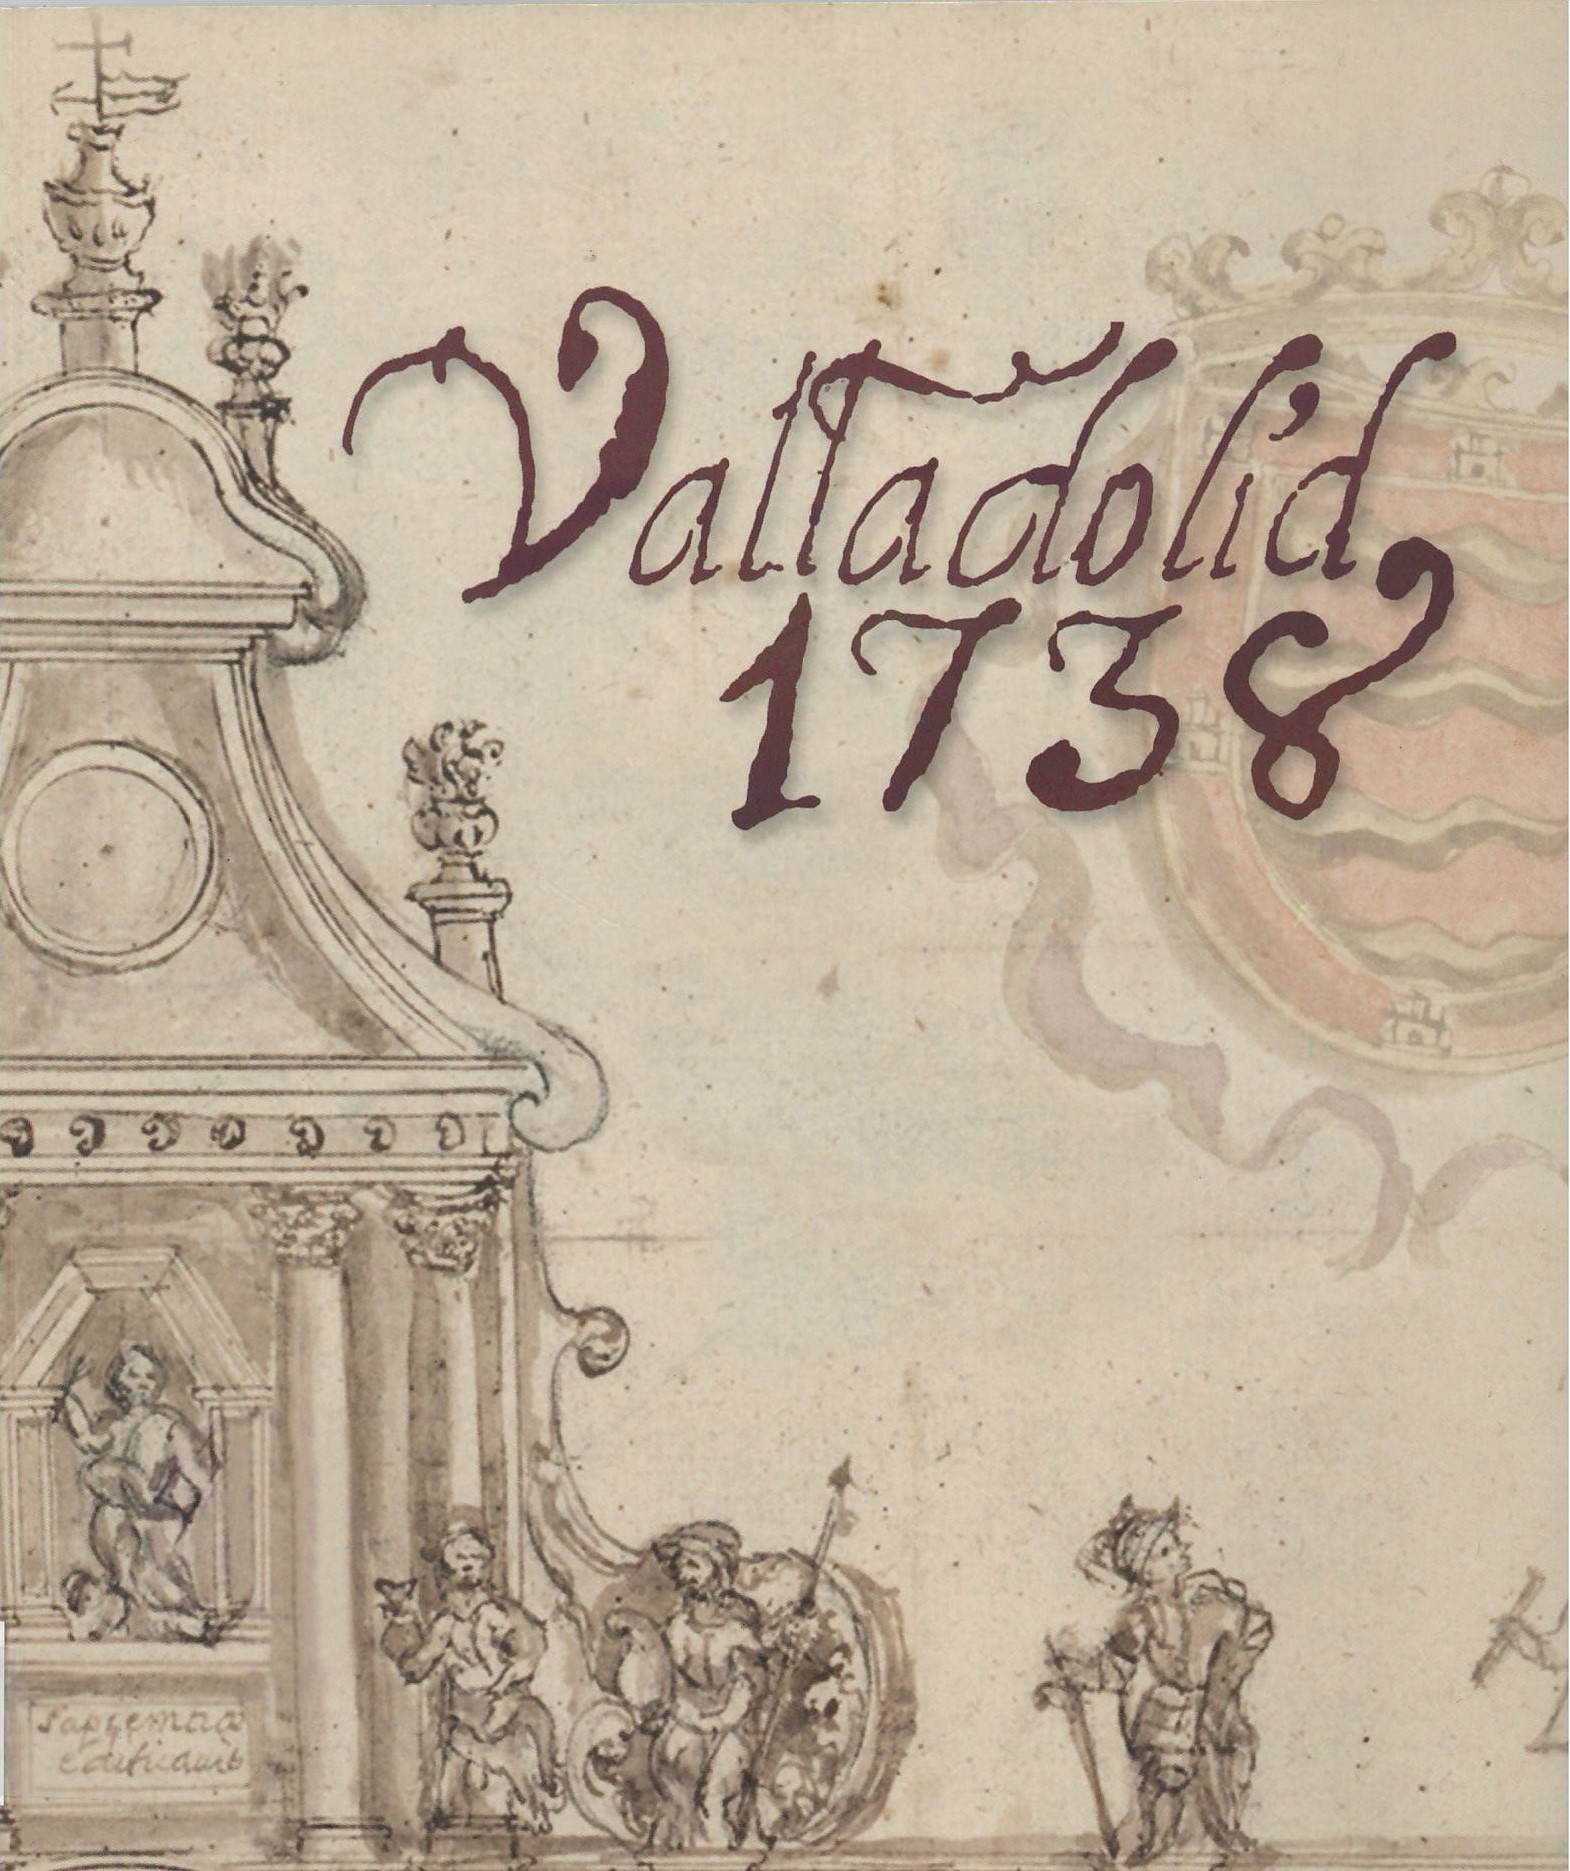 Imagen de portada del libro Valladolid 1738